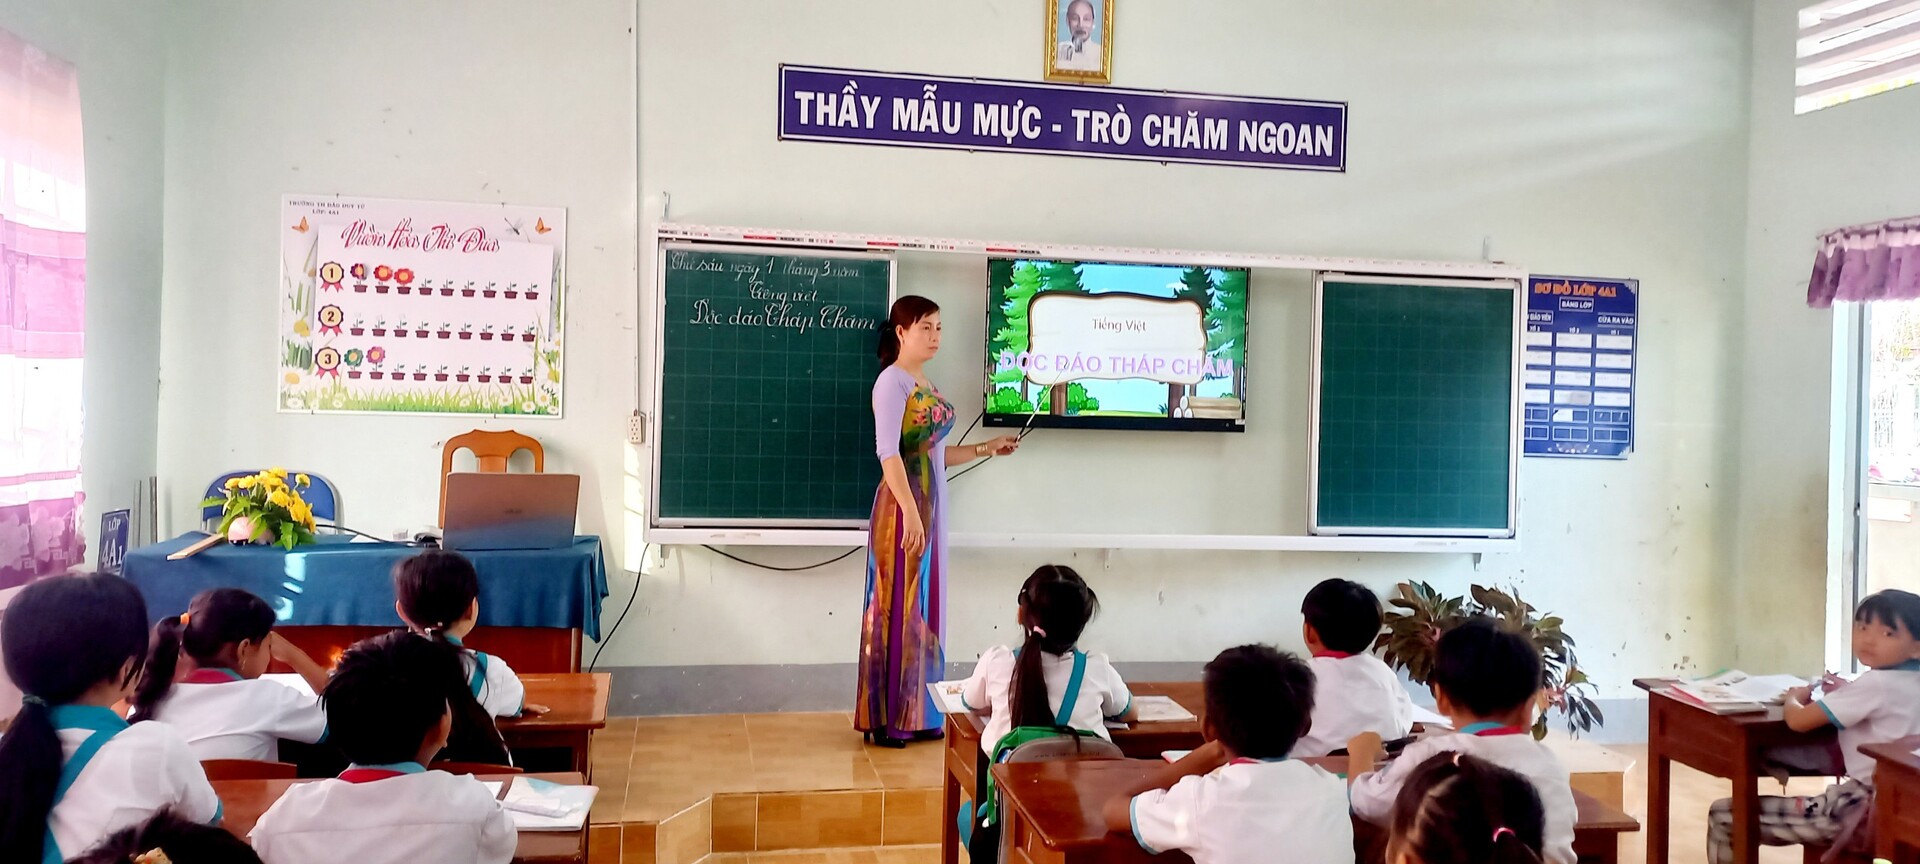 Từ khi ra trường năm 2007, cô Xuân đều gắn bó và giảng dạy ở các trường vùng sâu, vùng xa trên địa bàn tỉnh Cà Mau. Ở lớp nào, cô cũng được phụ huynh tin tưởng gửi gắm con em để họ yên tâm mưu sinh nơi đất khách.